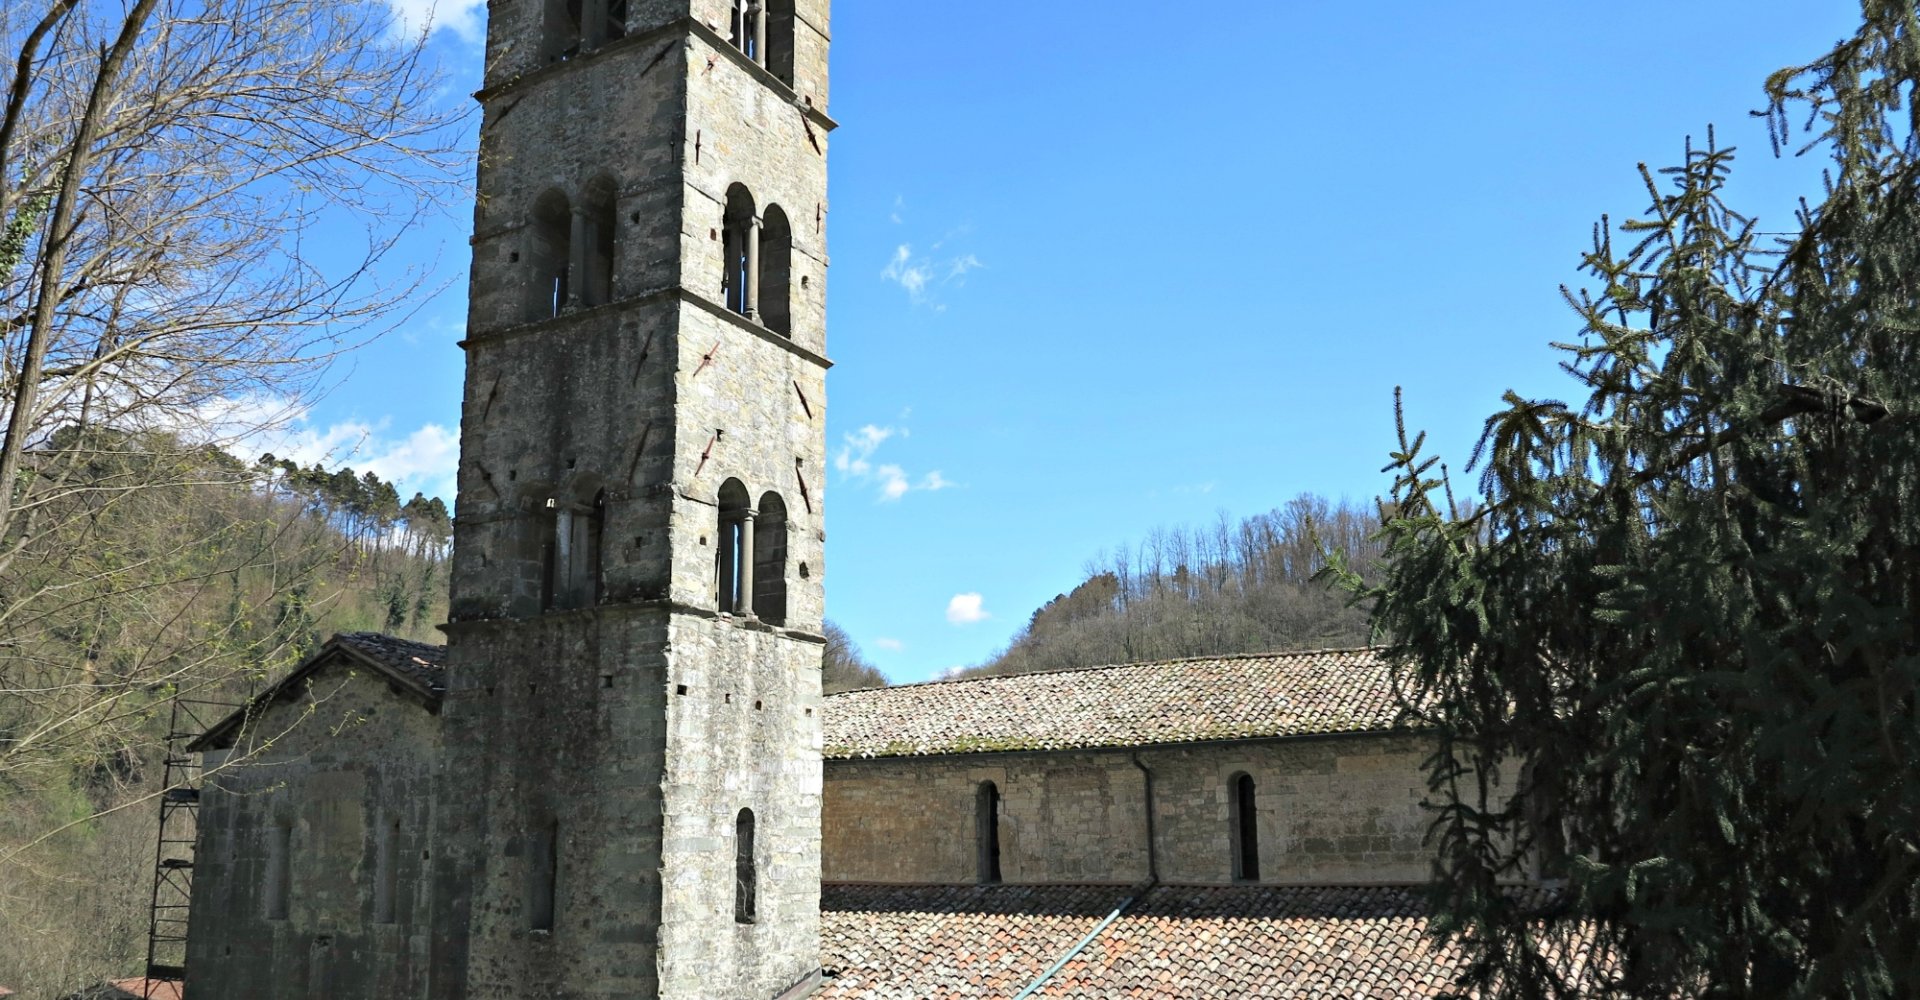 Glockenturm der Pfarrkirche Santa Maria im Ortsteil Loppia (Barga)